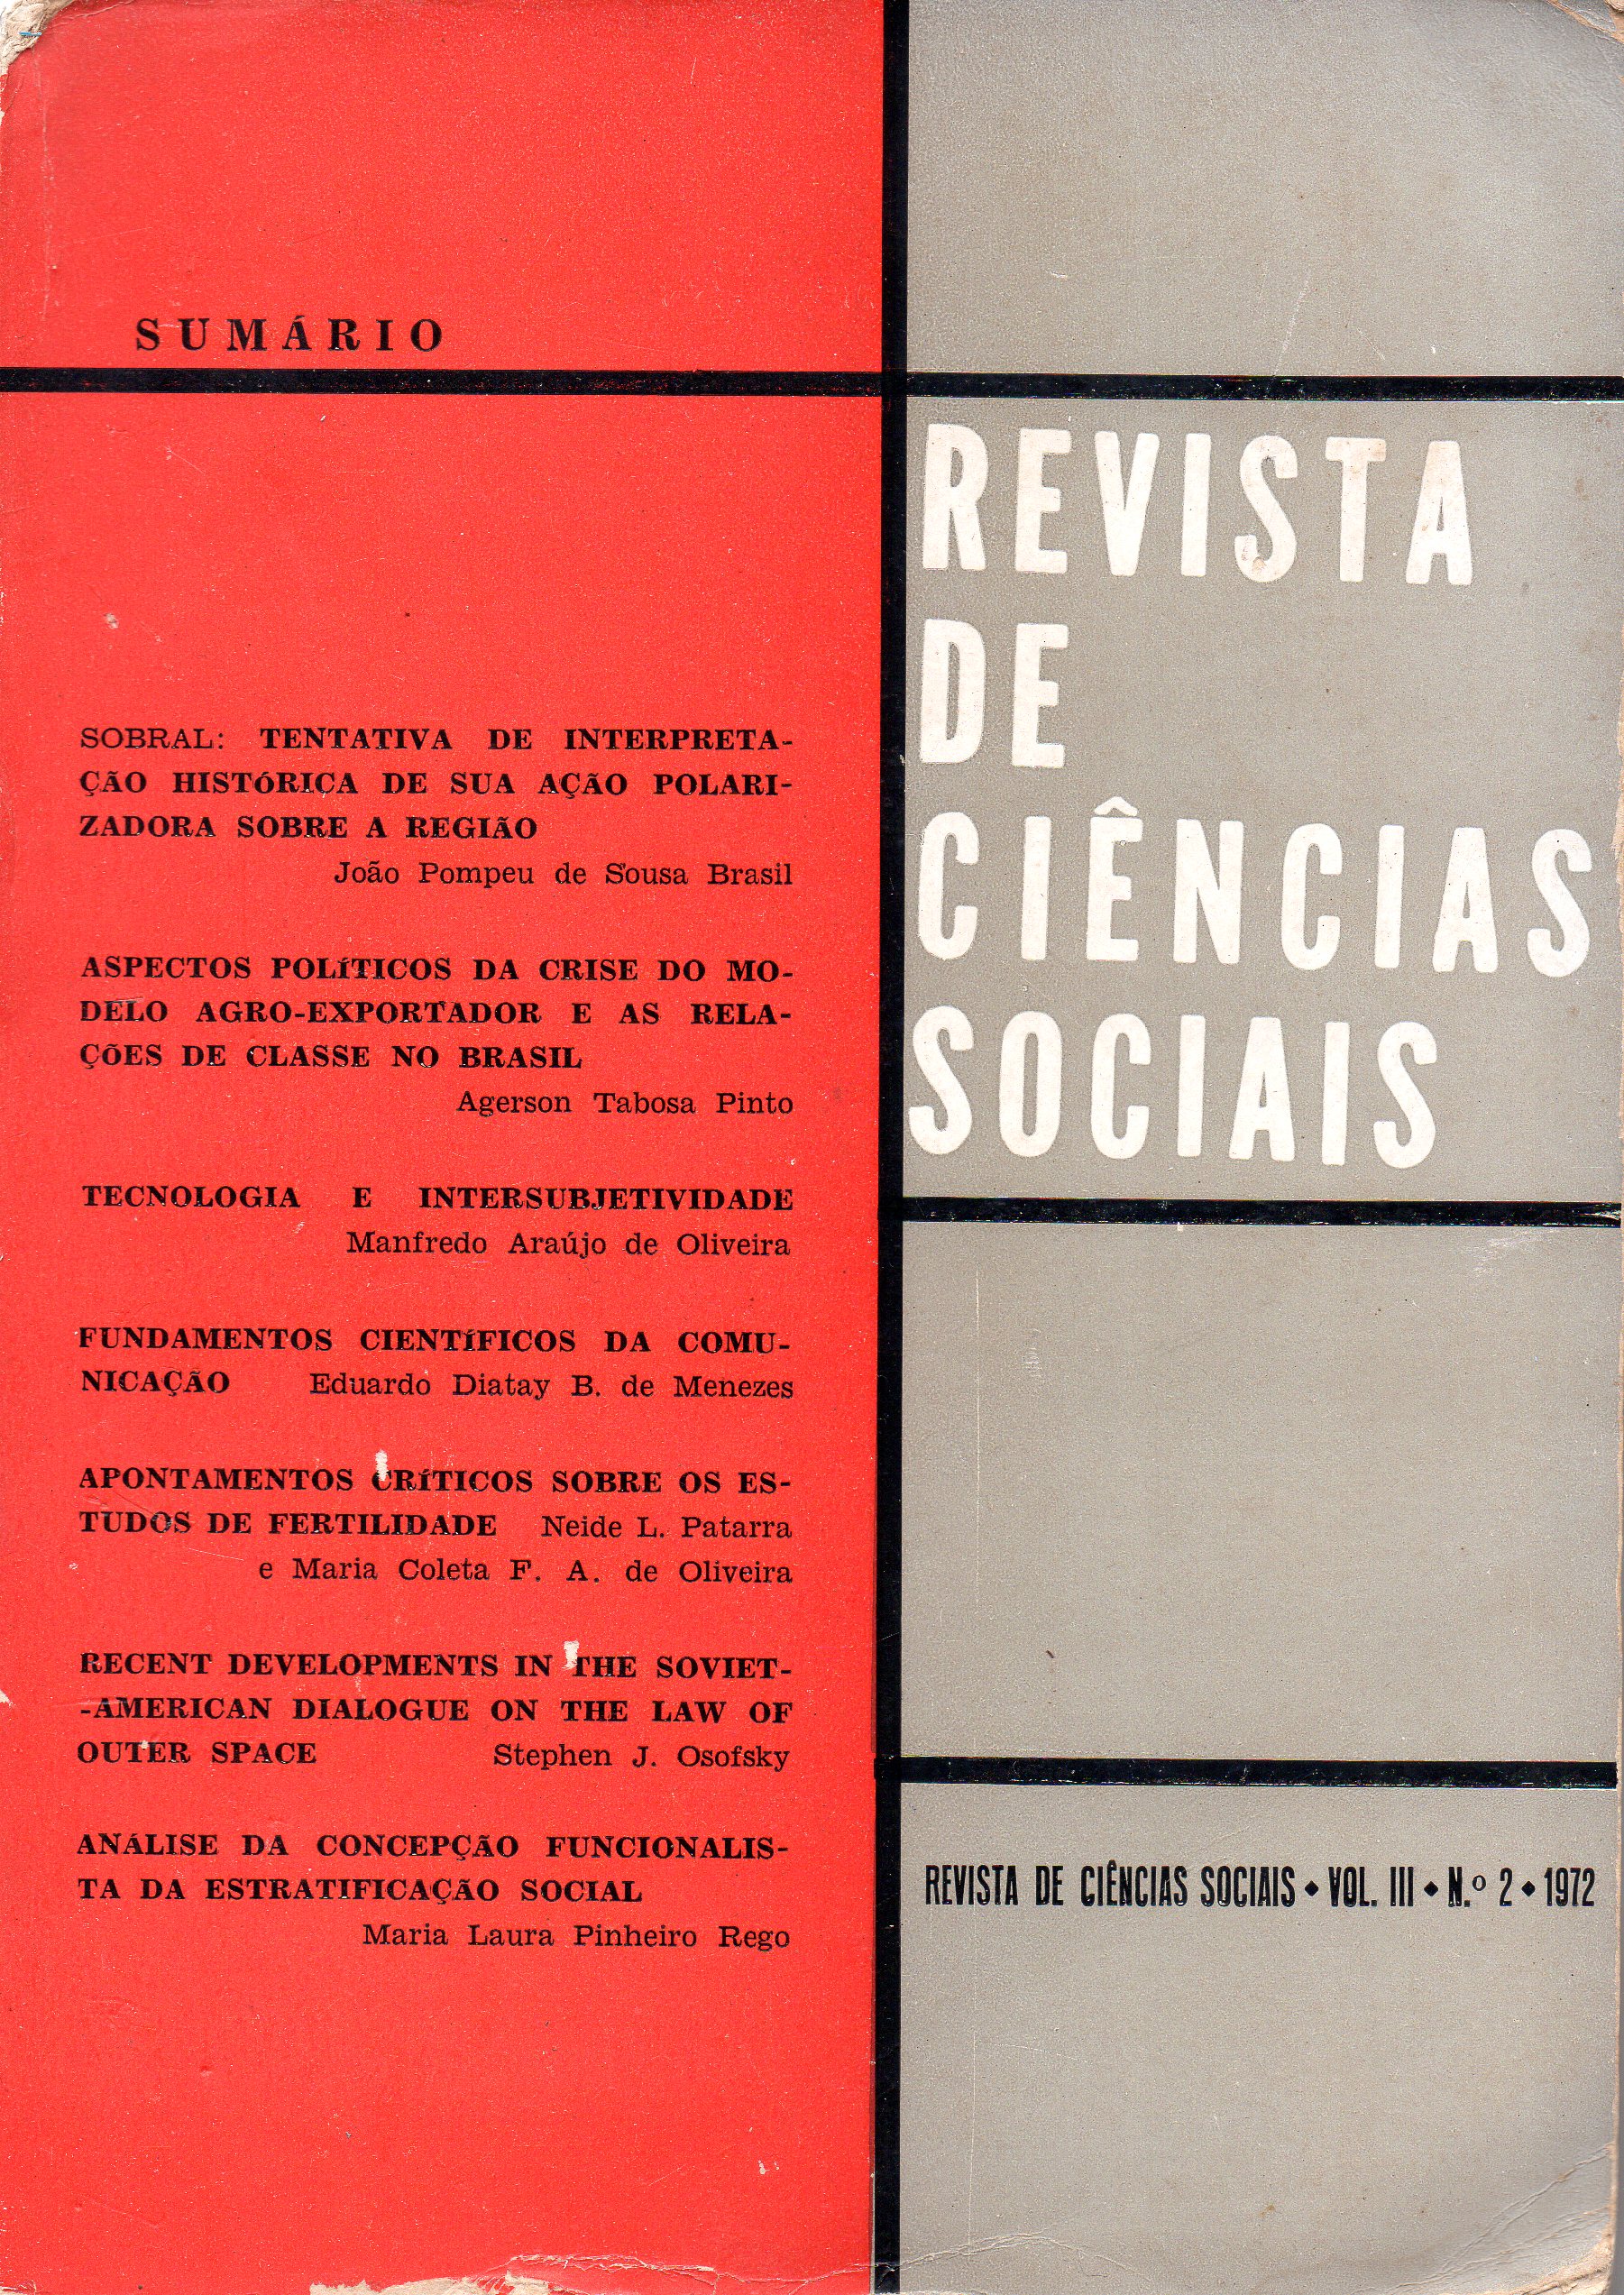 					Ver Vol. 3 Núm. 2 (1972): Revista de Ciências Sociais
				